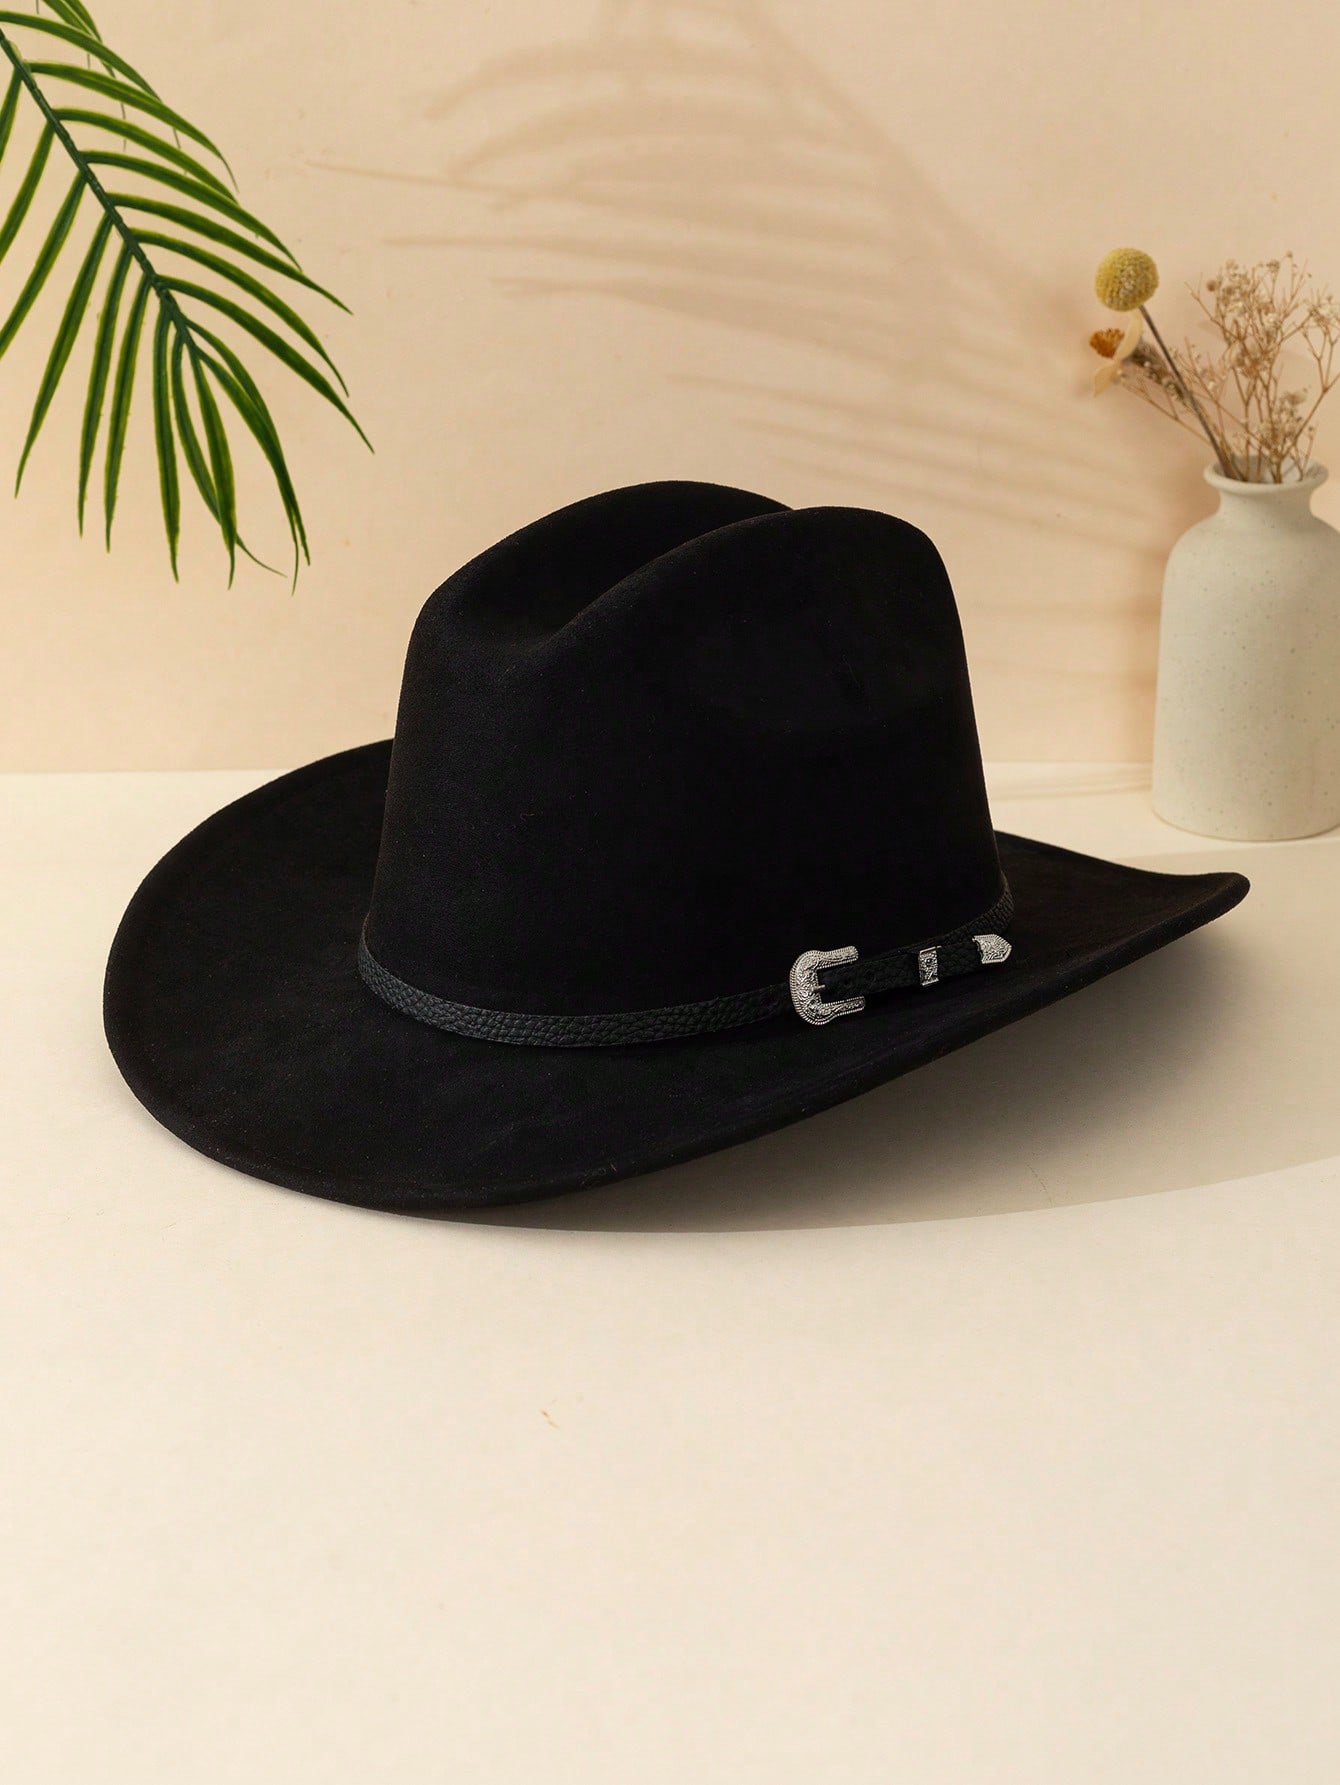 1 шт. черная замшевая ковбойская шляпа унисекс с железной пряжкой и закругленными полями для осени и зимы, черный регулируемая модная унисекс шляпа для отдыха на открытом воздухе